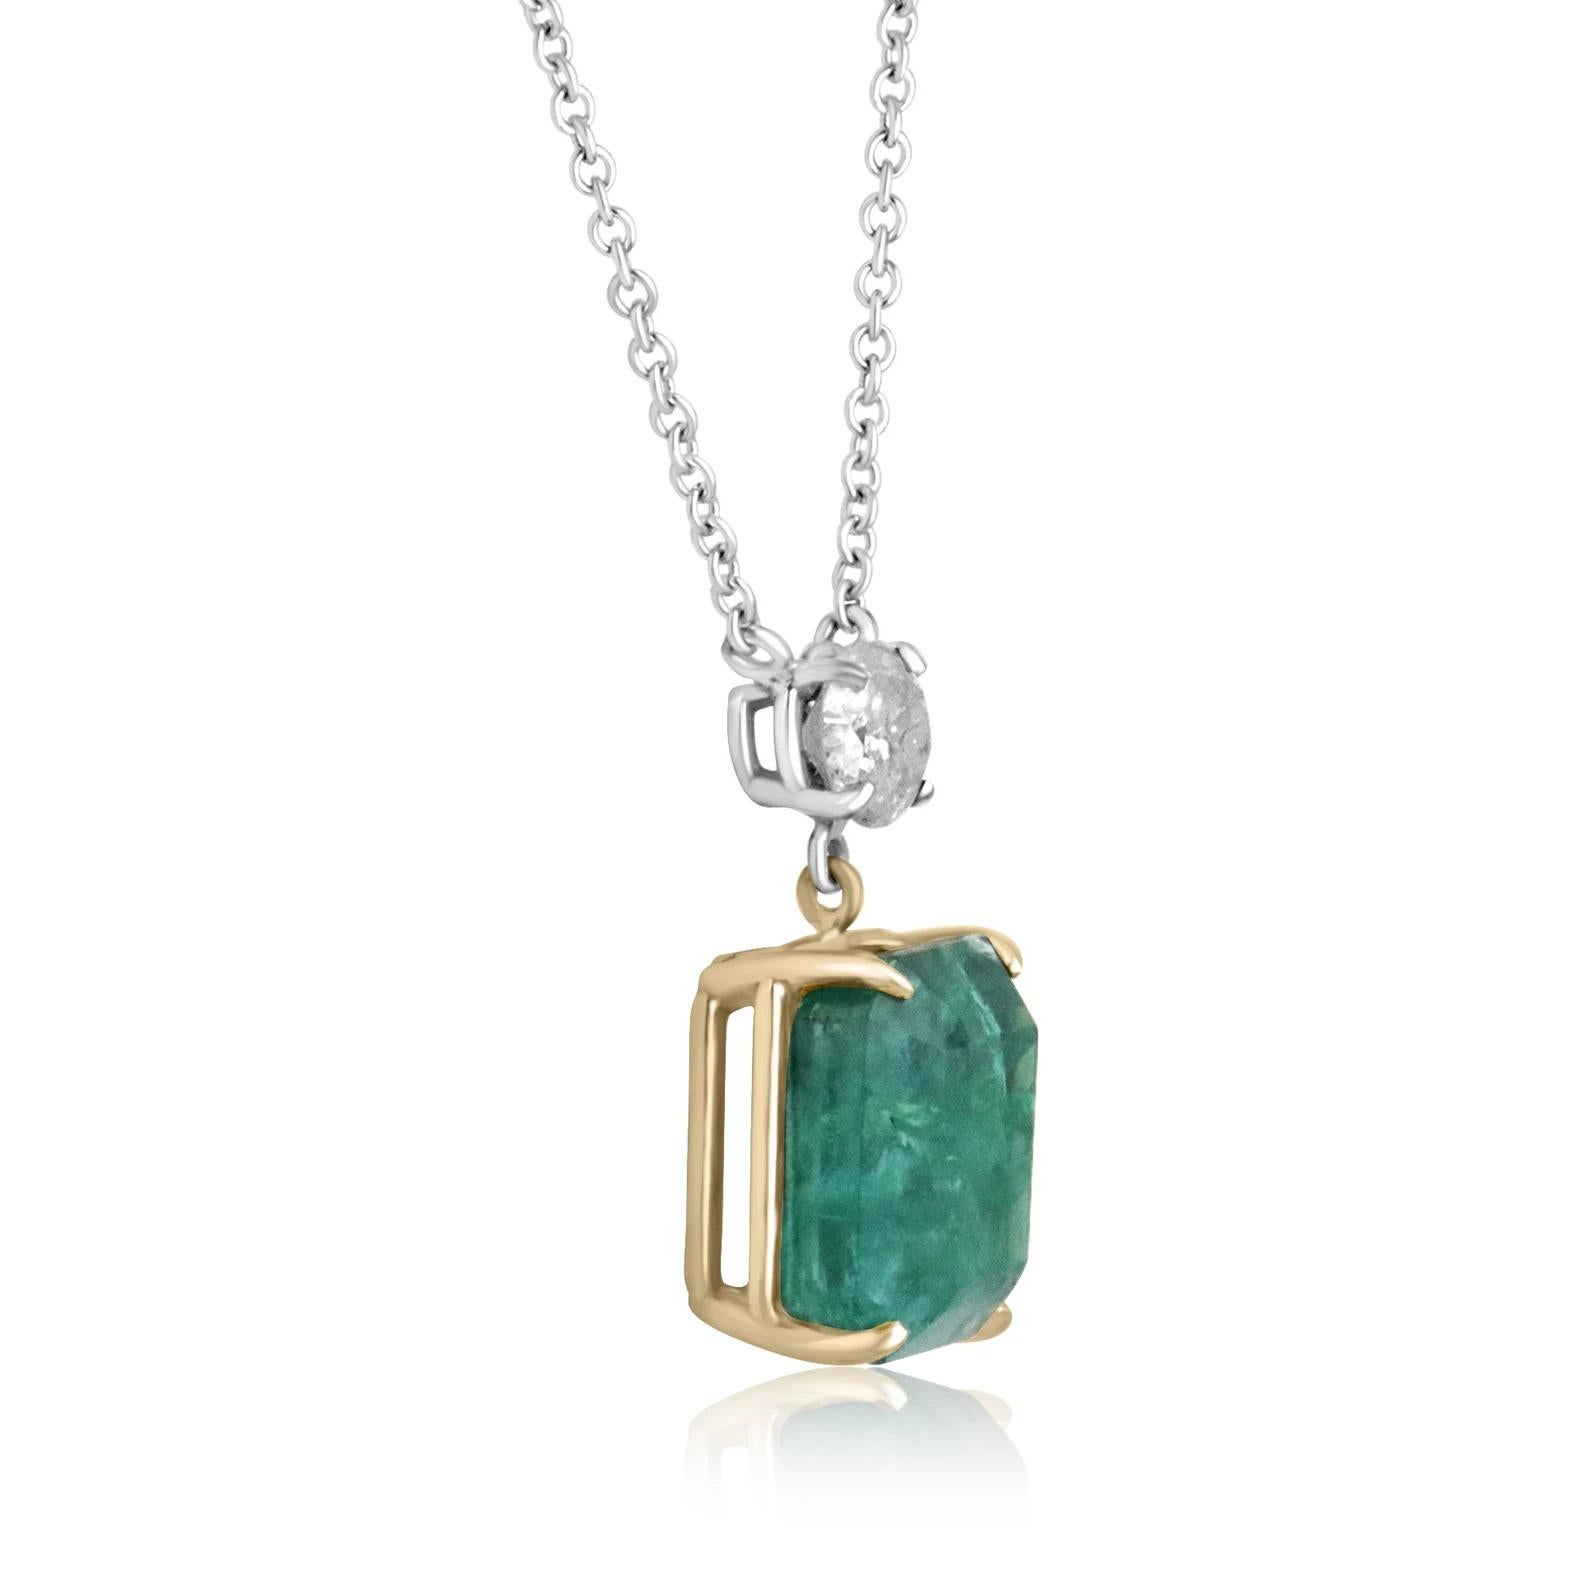 Werfen Sie einen Blick auf diese atemberaubende Halskette aus Smaragden und Diamanten. Der natürliche sambische Smaragd hat ganze 9,67 Karat. Der Stein hat eine tiefgrüne Farbe und unglaubliche natürliche Unvollkommenheiten, die Sie in seiner